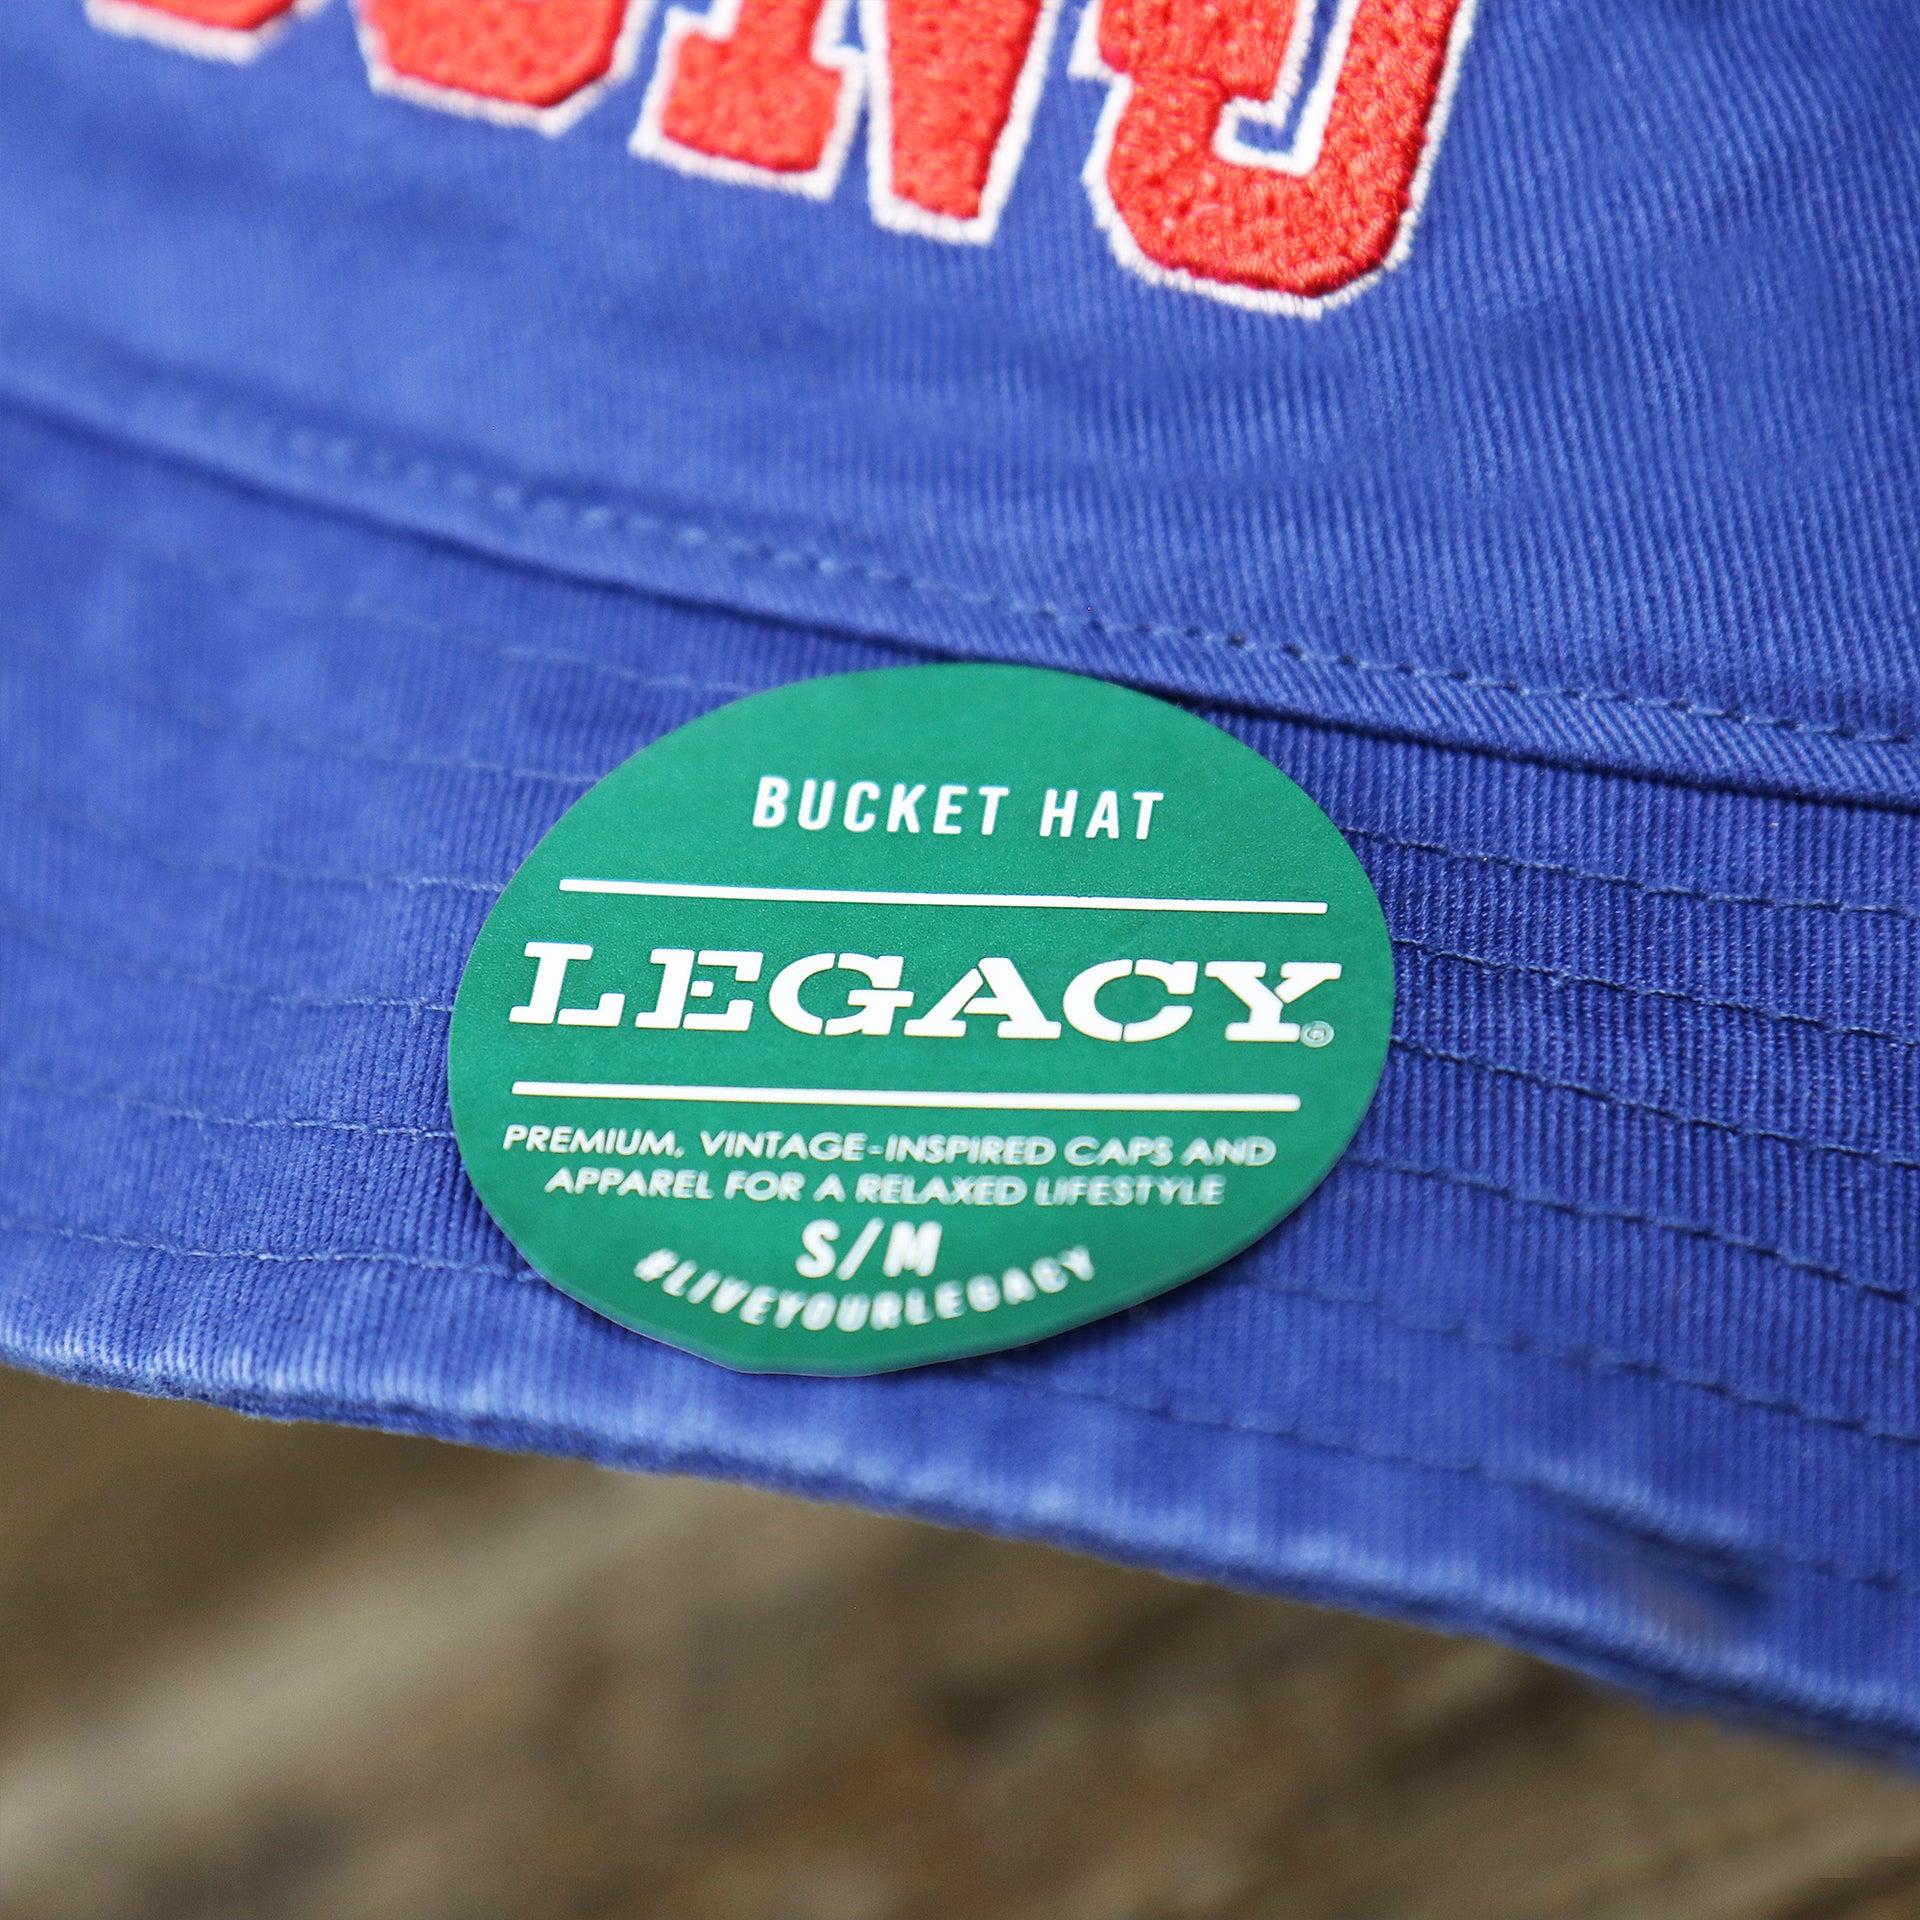 The Legacy Sticker on the Ocean City New Jersey OCNJ Wordmark Bucket Hat | Royal Blue Bucket Hat